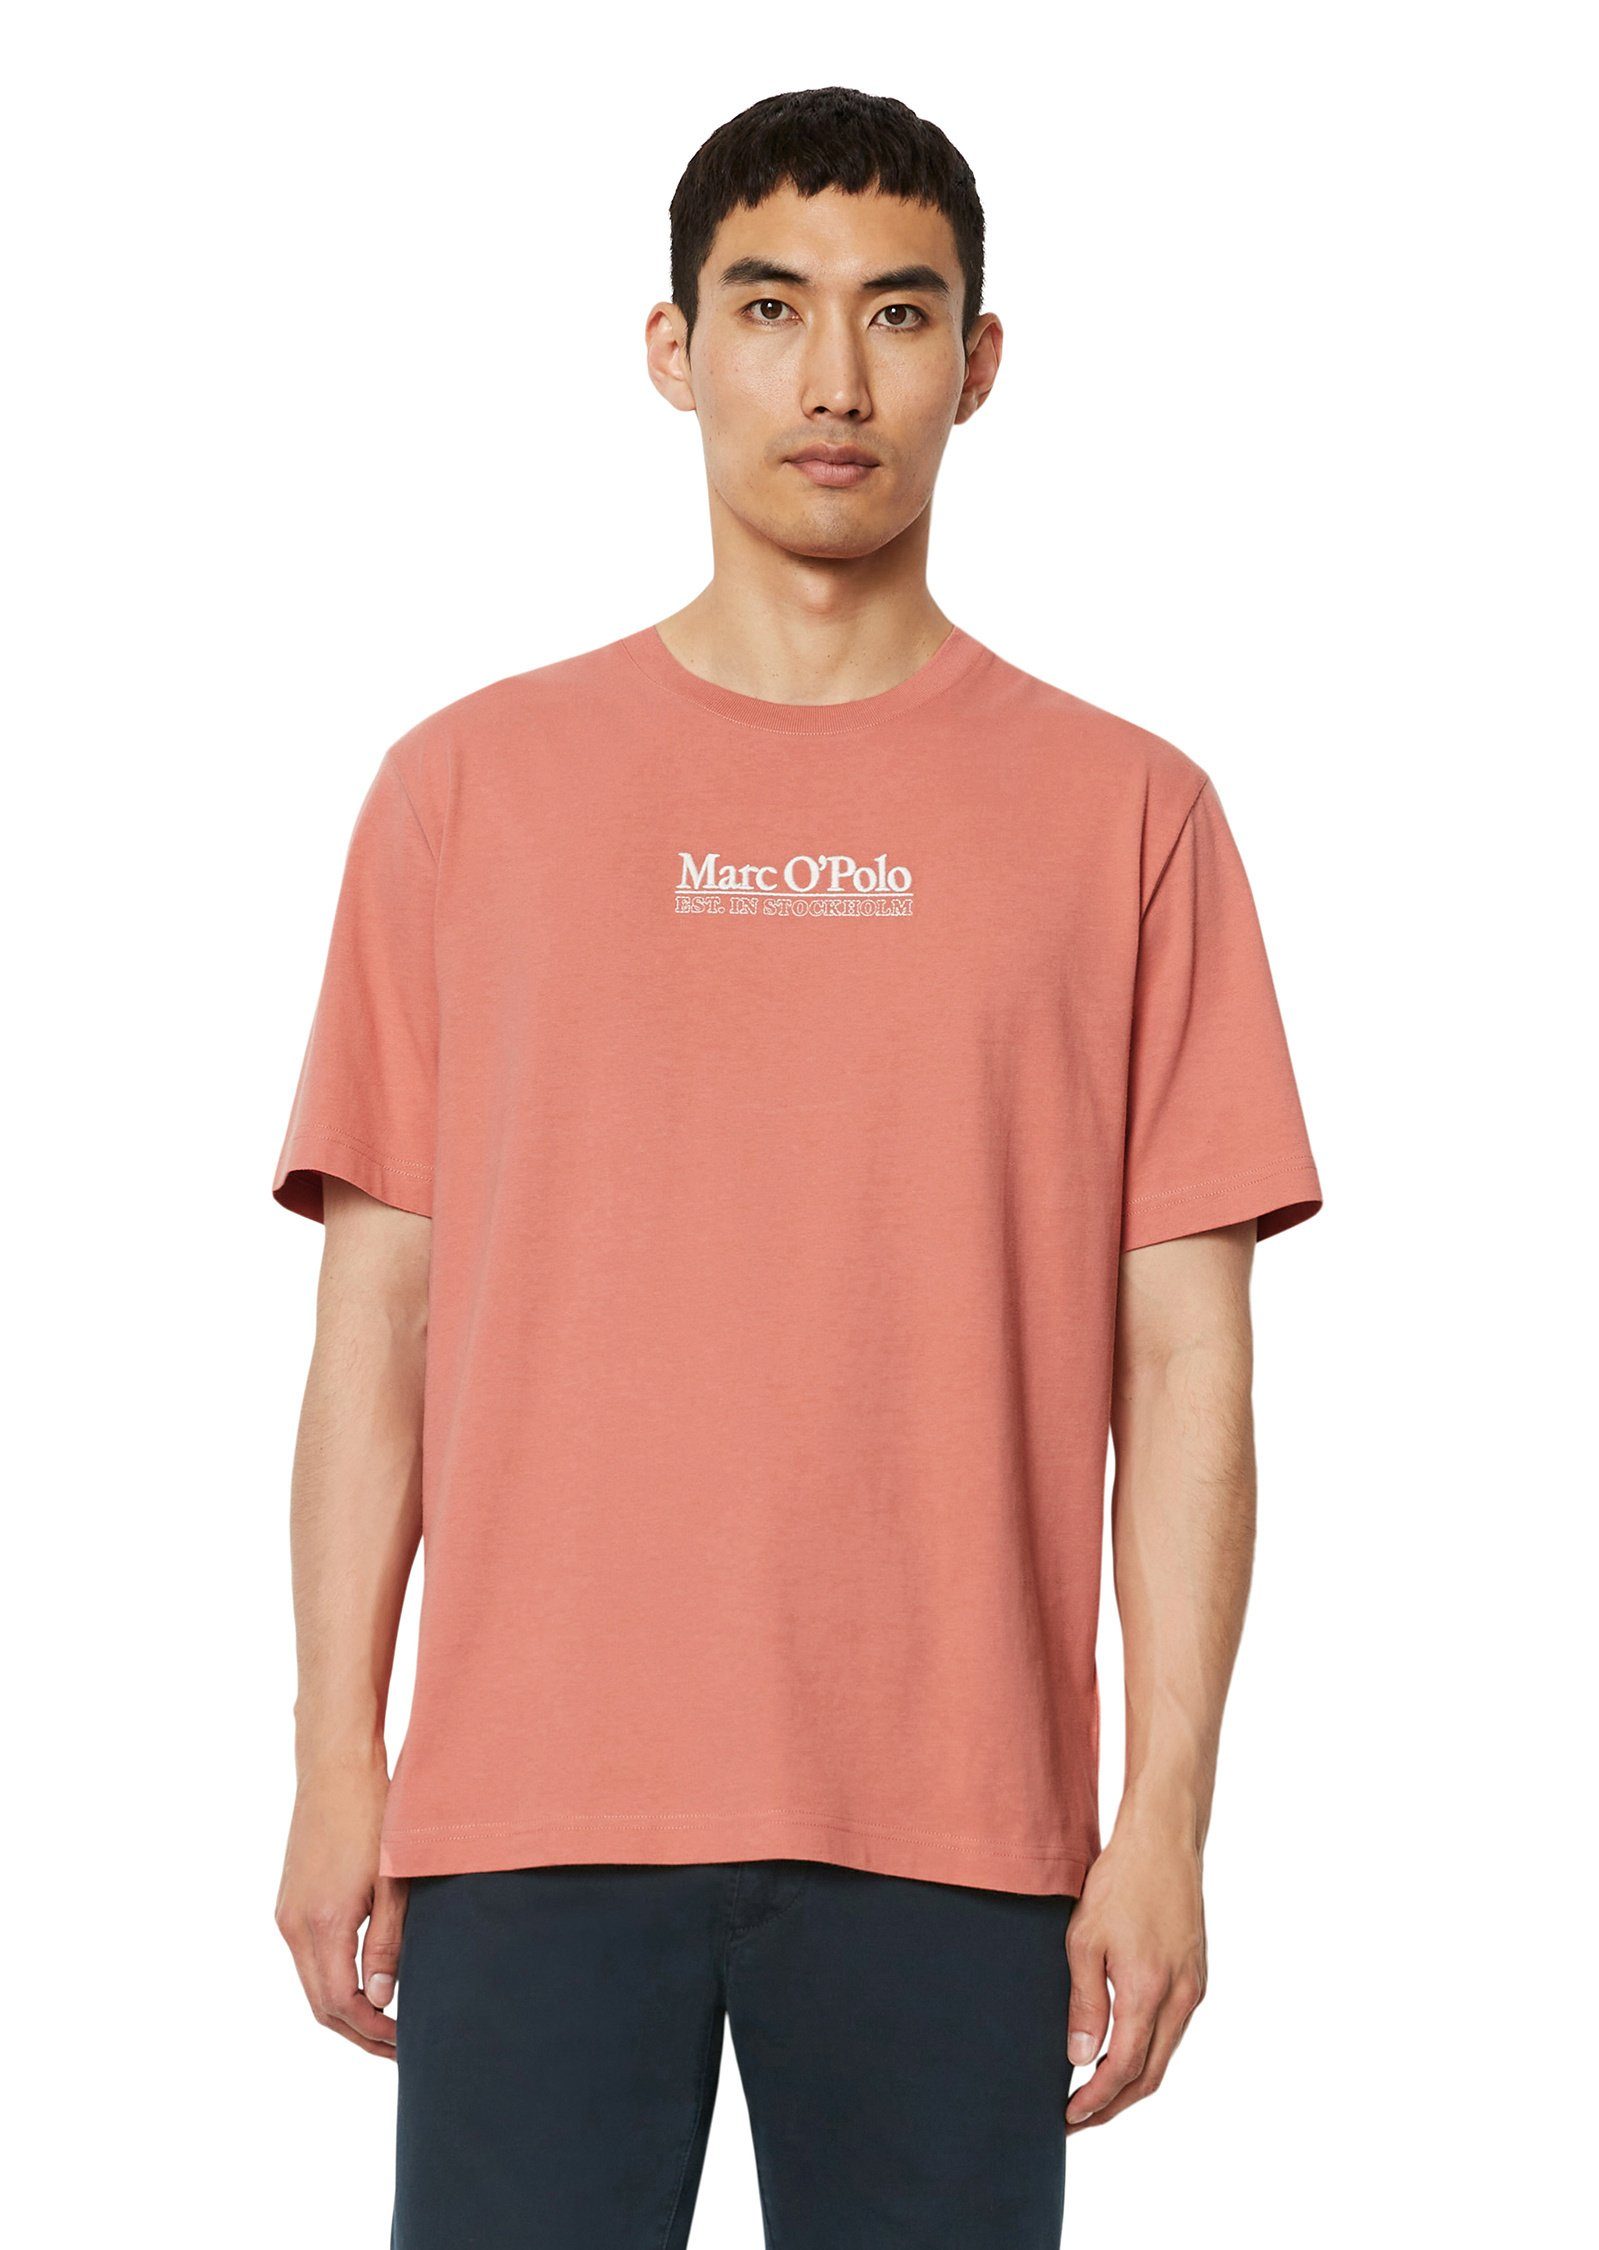 mittelschwerem O'Polo aus rot Marc Bio-Baumwoll-Jersey T-Shirt